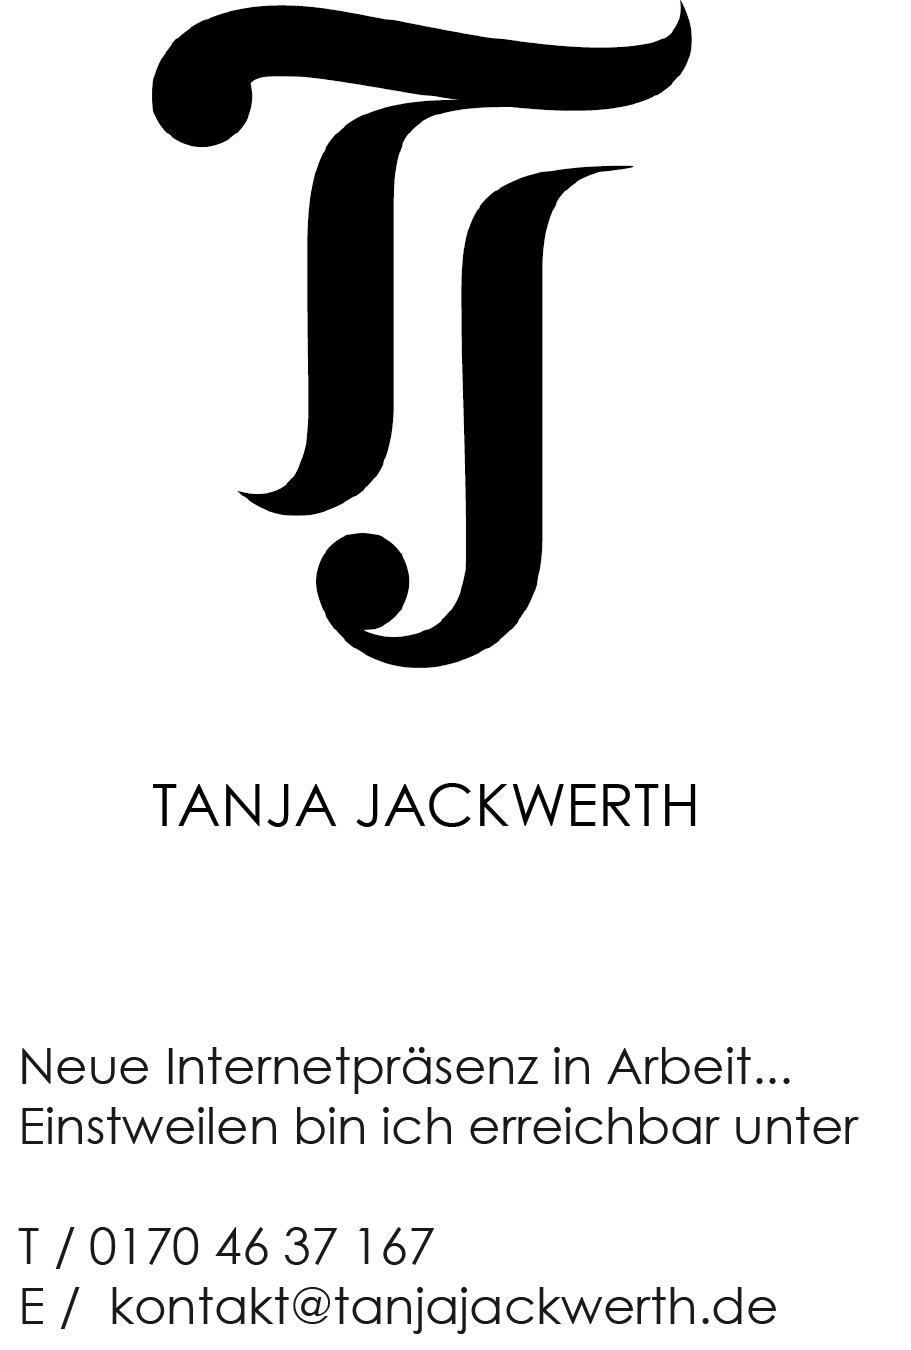 Tanja Jackwerth